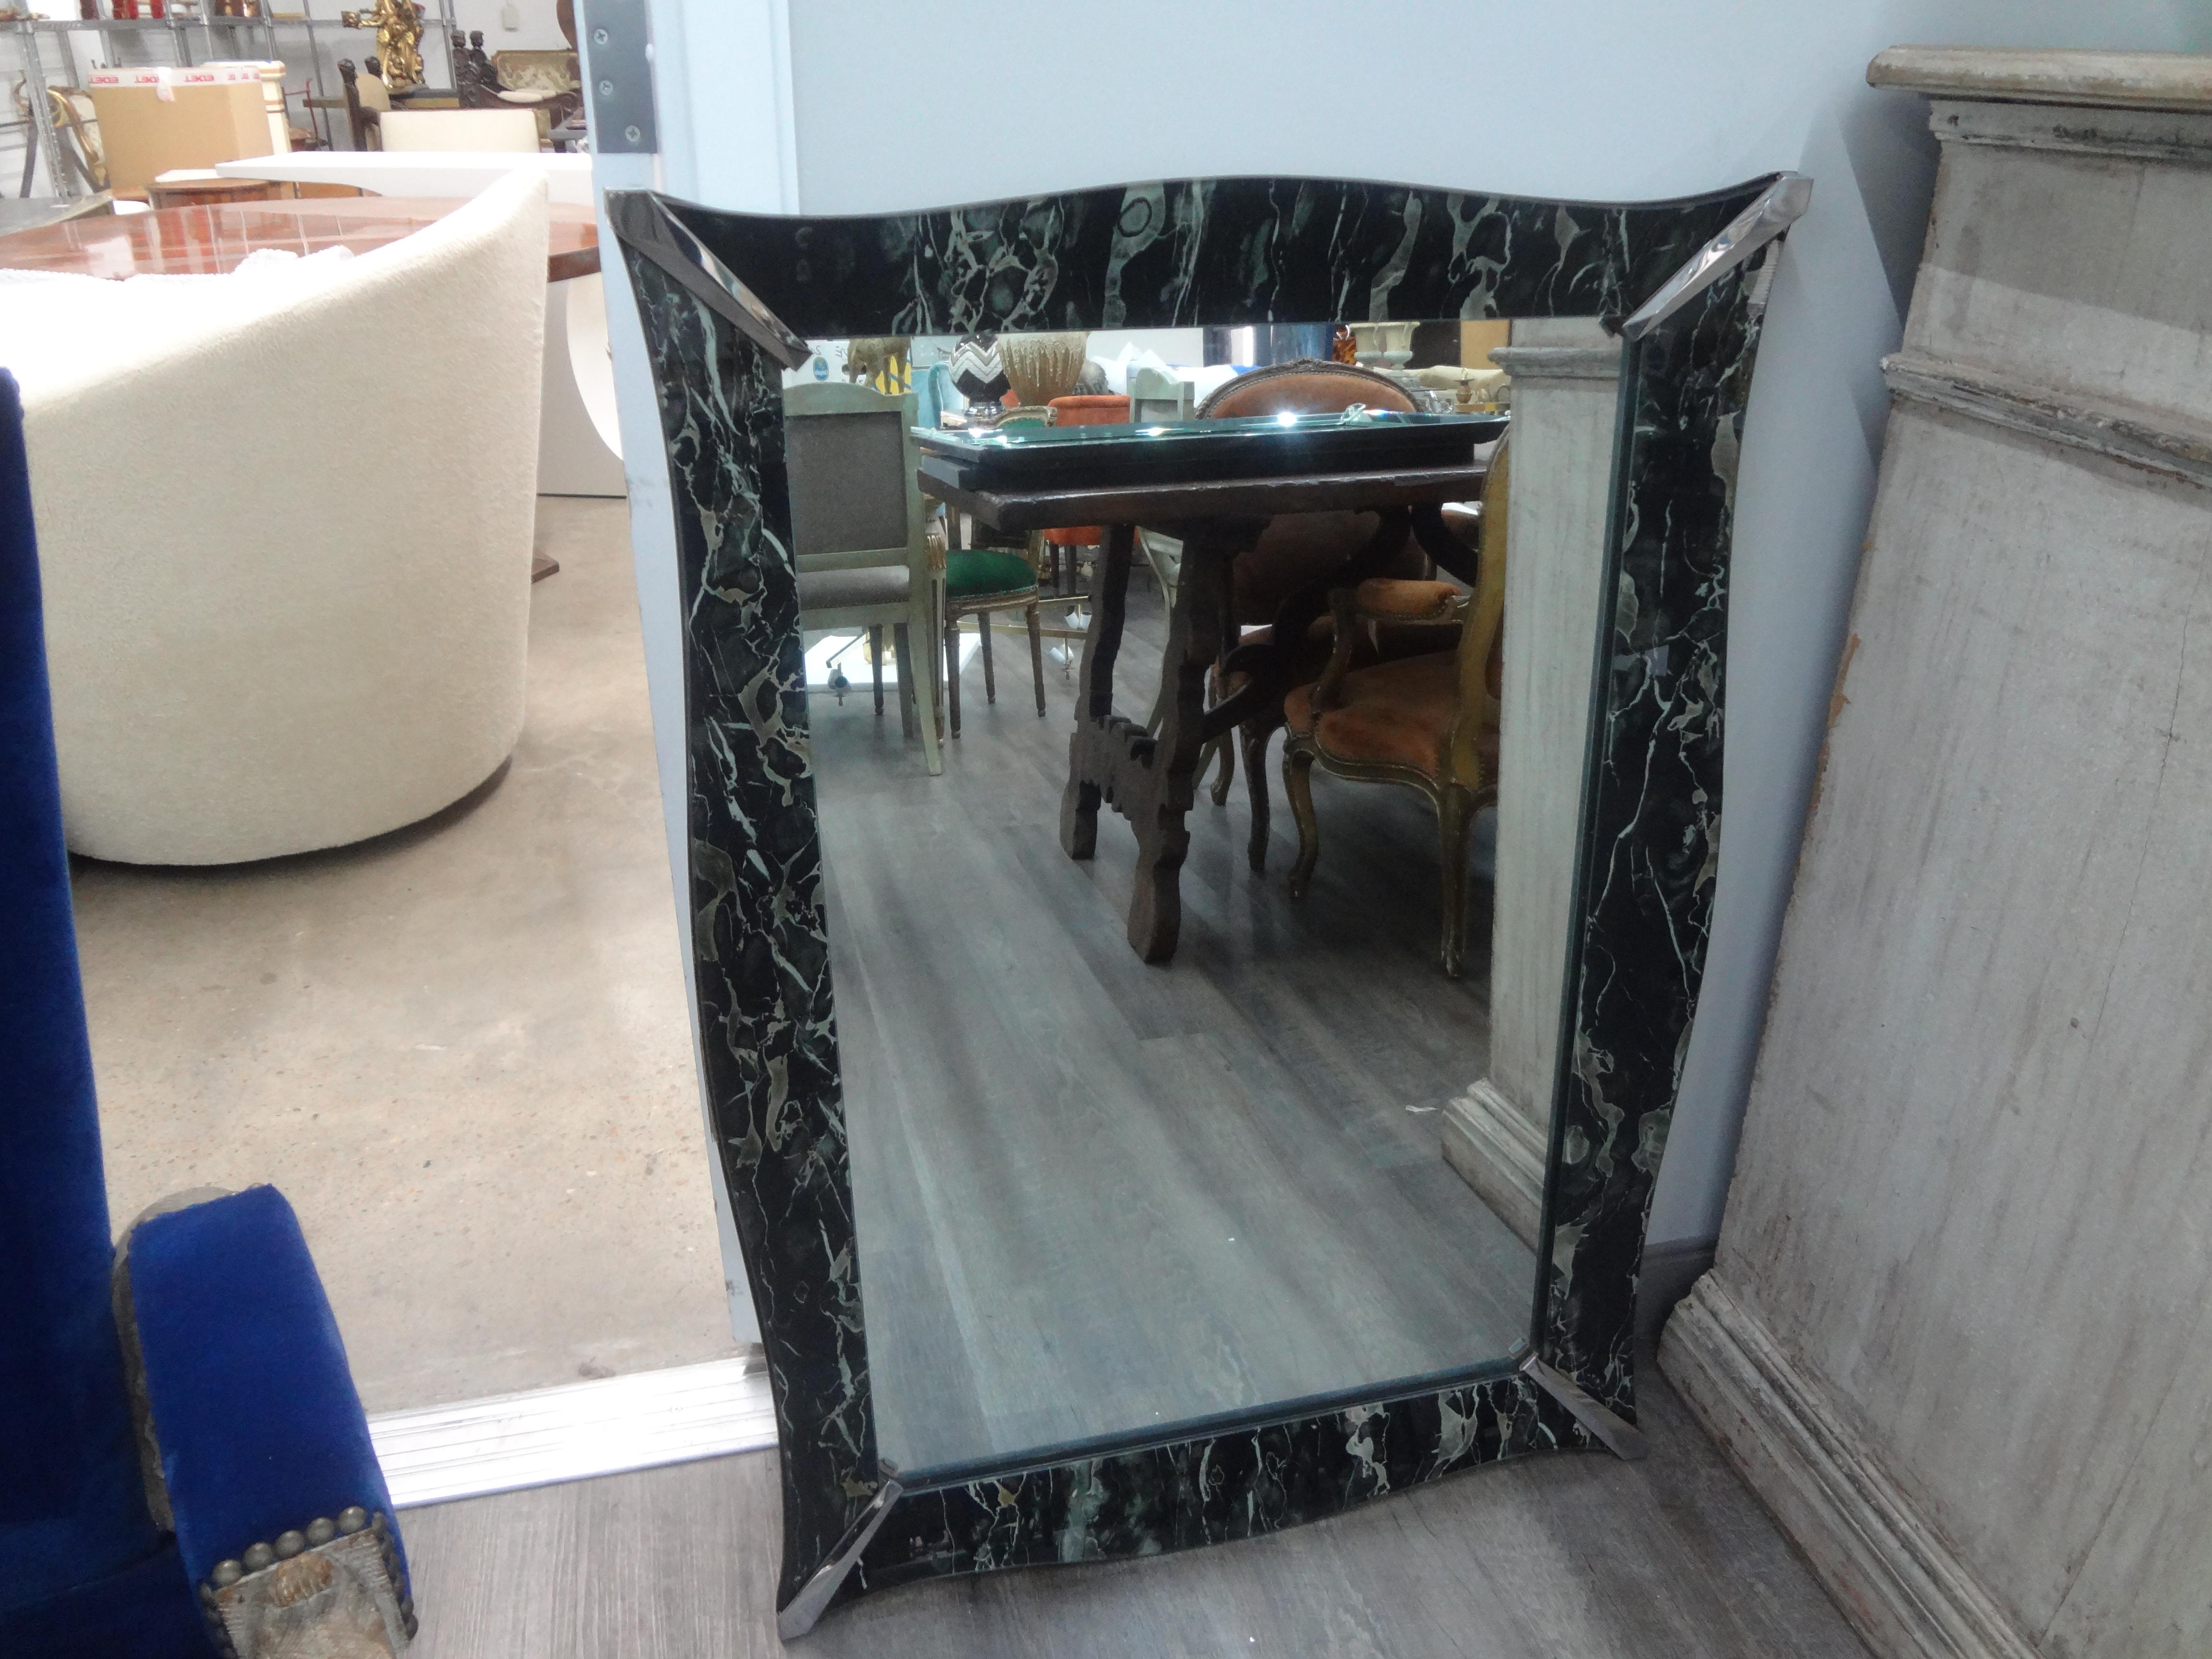 Vintage faux Marmor eglomise venezianischen Stil Spiegel.
Dieser ungewöhnliche rechteckige Spiegel im venezianischen Stil hat einen Umfang aus marmoriertem Eglomise-Glas mit einer zentralen Spiegelfläche und verchromten Eckdetails. Unser schöner